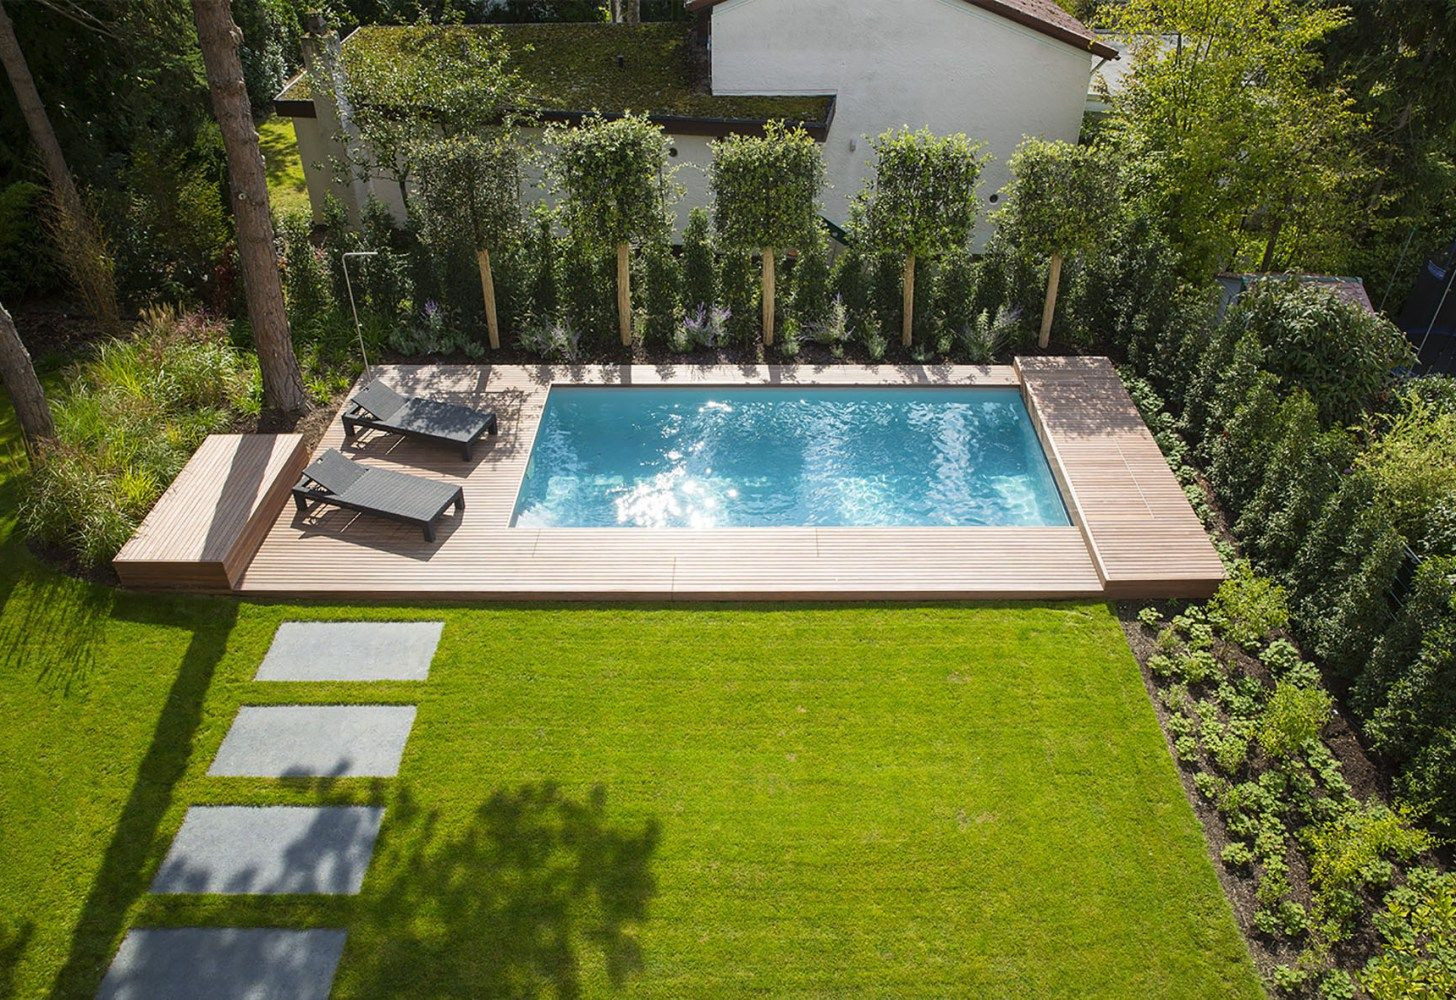 Kleiner Garten Mit Pool
 Pool in kleinem Garten Garten